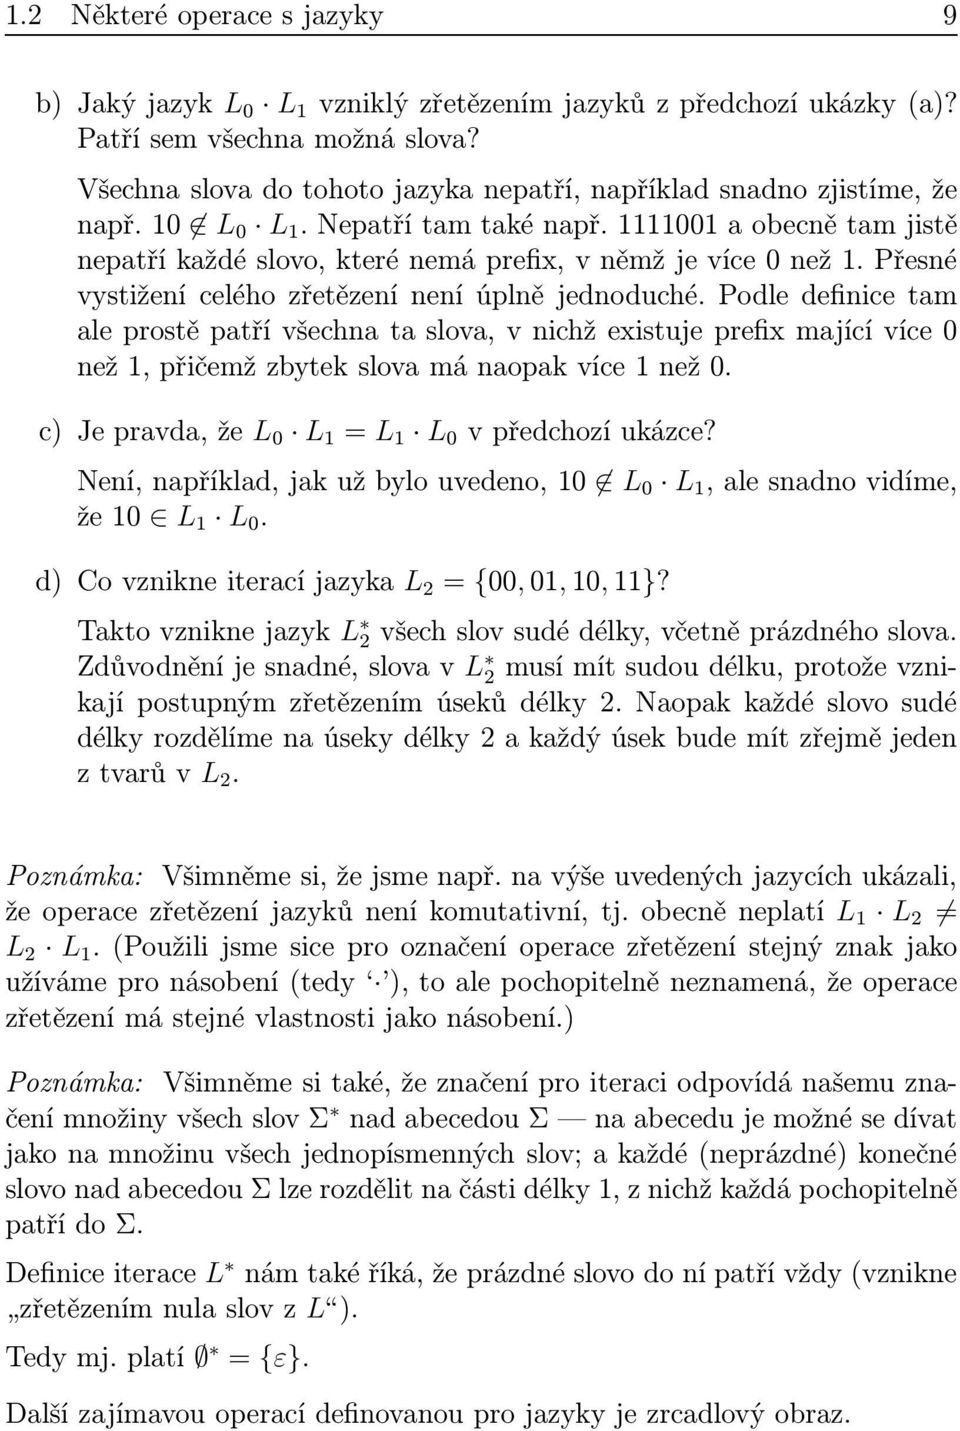 Podle definice tm leprostěptřívšechntslov,vnichžexistujeprefixmjícívíce0 než1,přičemžzbytekslovmánopkvíce1než0. c)jeprvd,že L 0 L 1 = L 1 L 0 vpředchozíukázce?